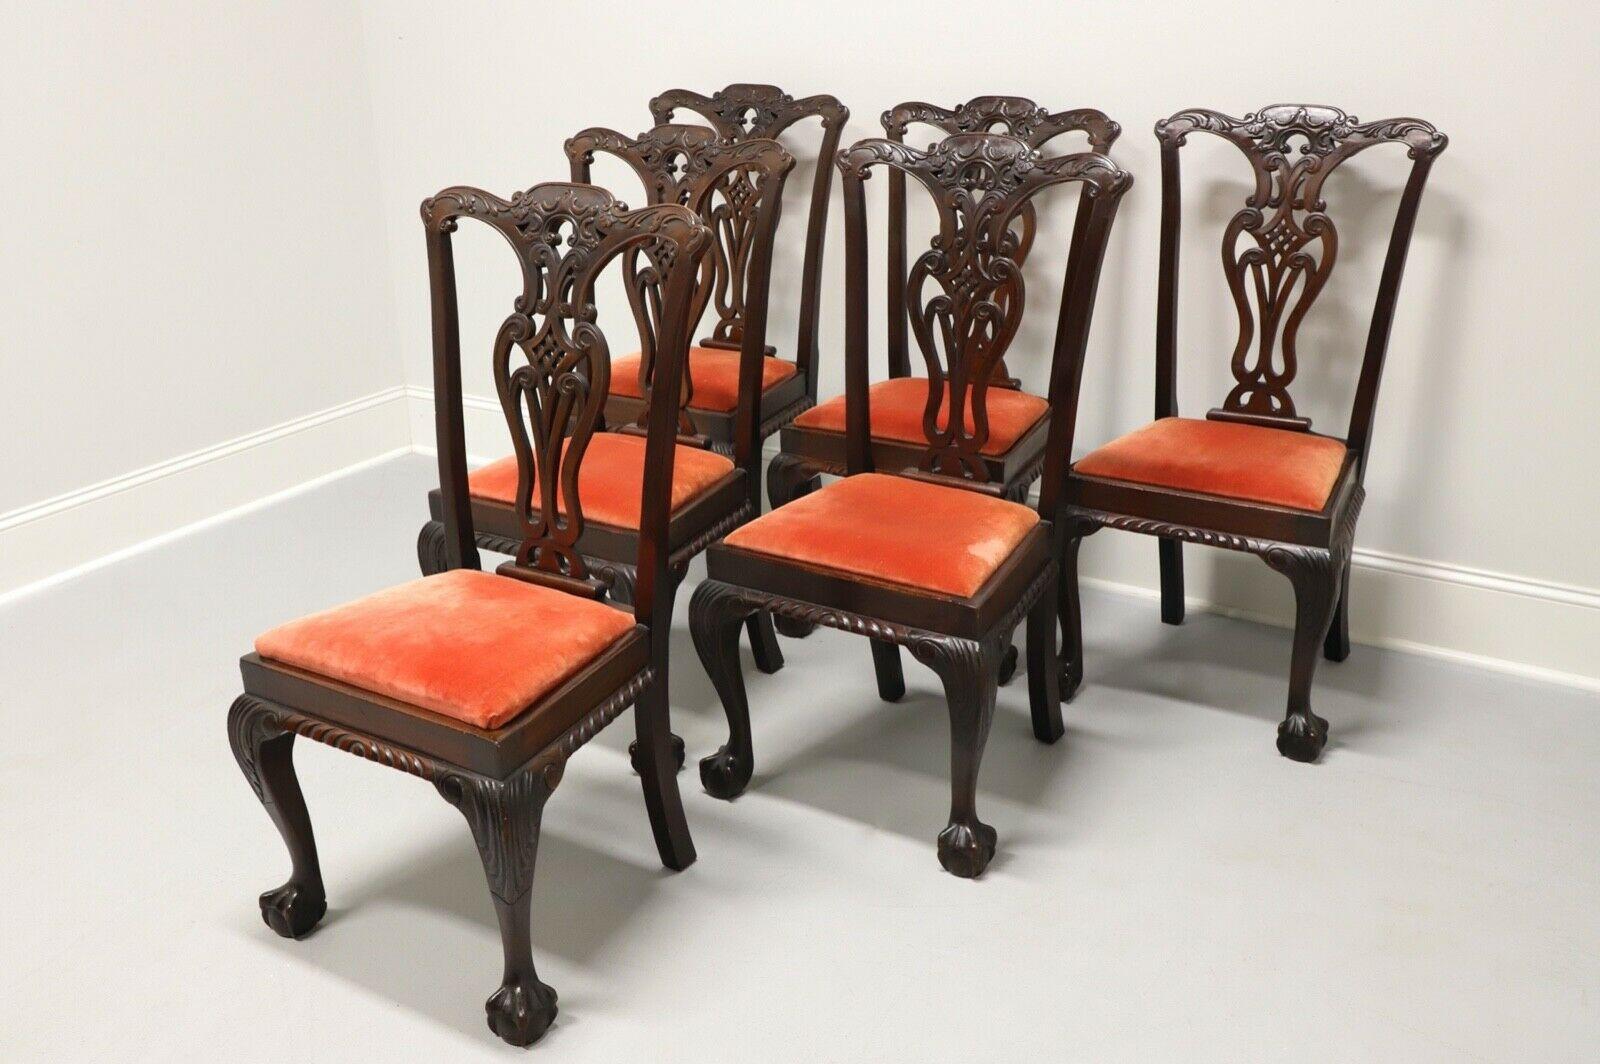 Ein Satz von sechs antiken Esszimmerstühlen aus massivem Mahagoni, ohne Markenzeichen. Englischer Chippendale-Stil mit geschnitzten Rückenlehnen, gepolsterten Sitzen aus rotem Samt, geschnitzten Schürzen, Kabriole-Beinen mit geschnitzten Knien und